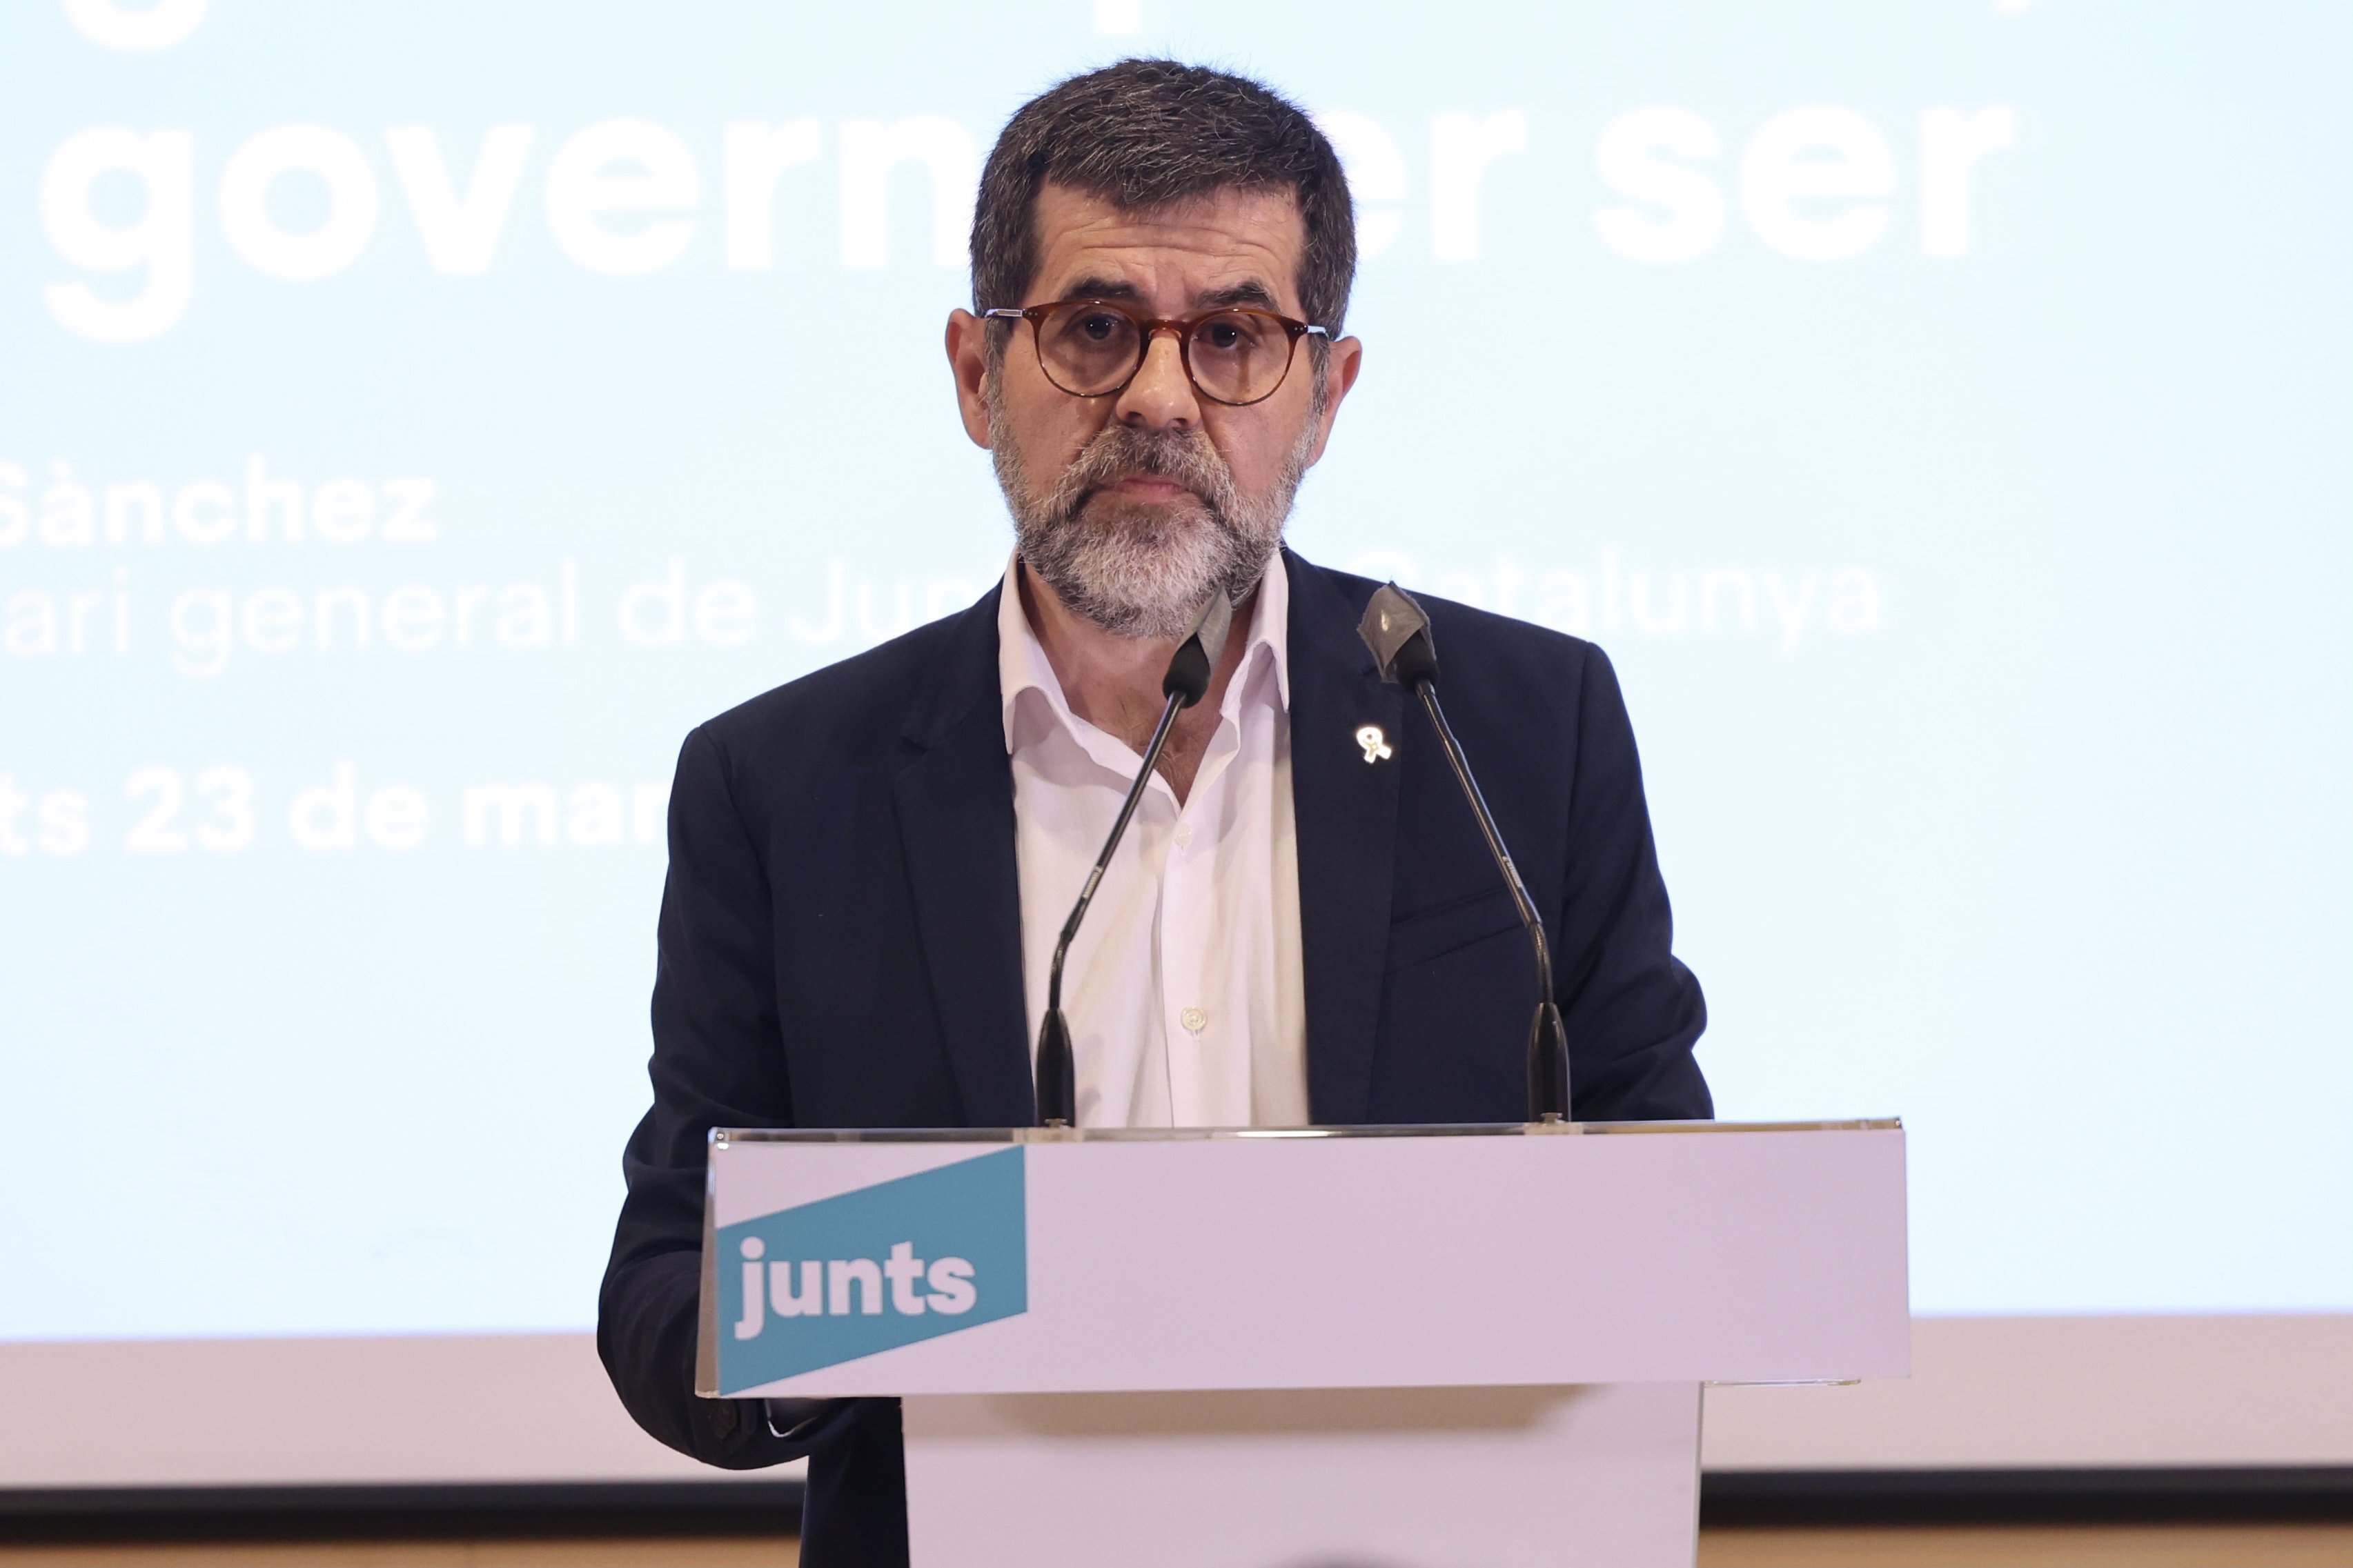 La patacada de Cs a Madrid, segons Jordi Sànchez: "Justícia poètica"